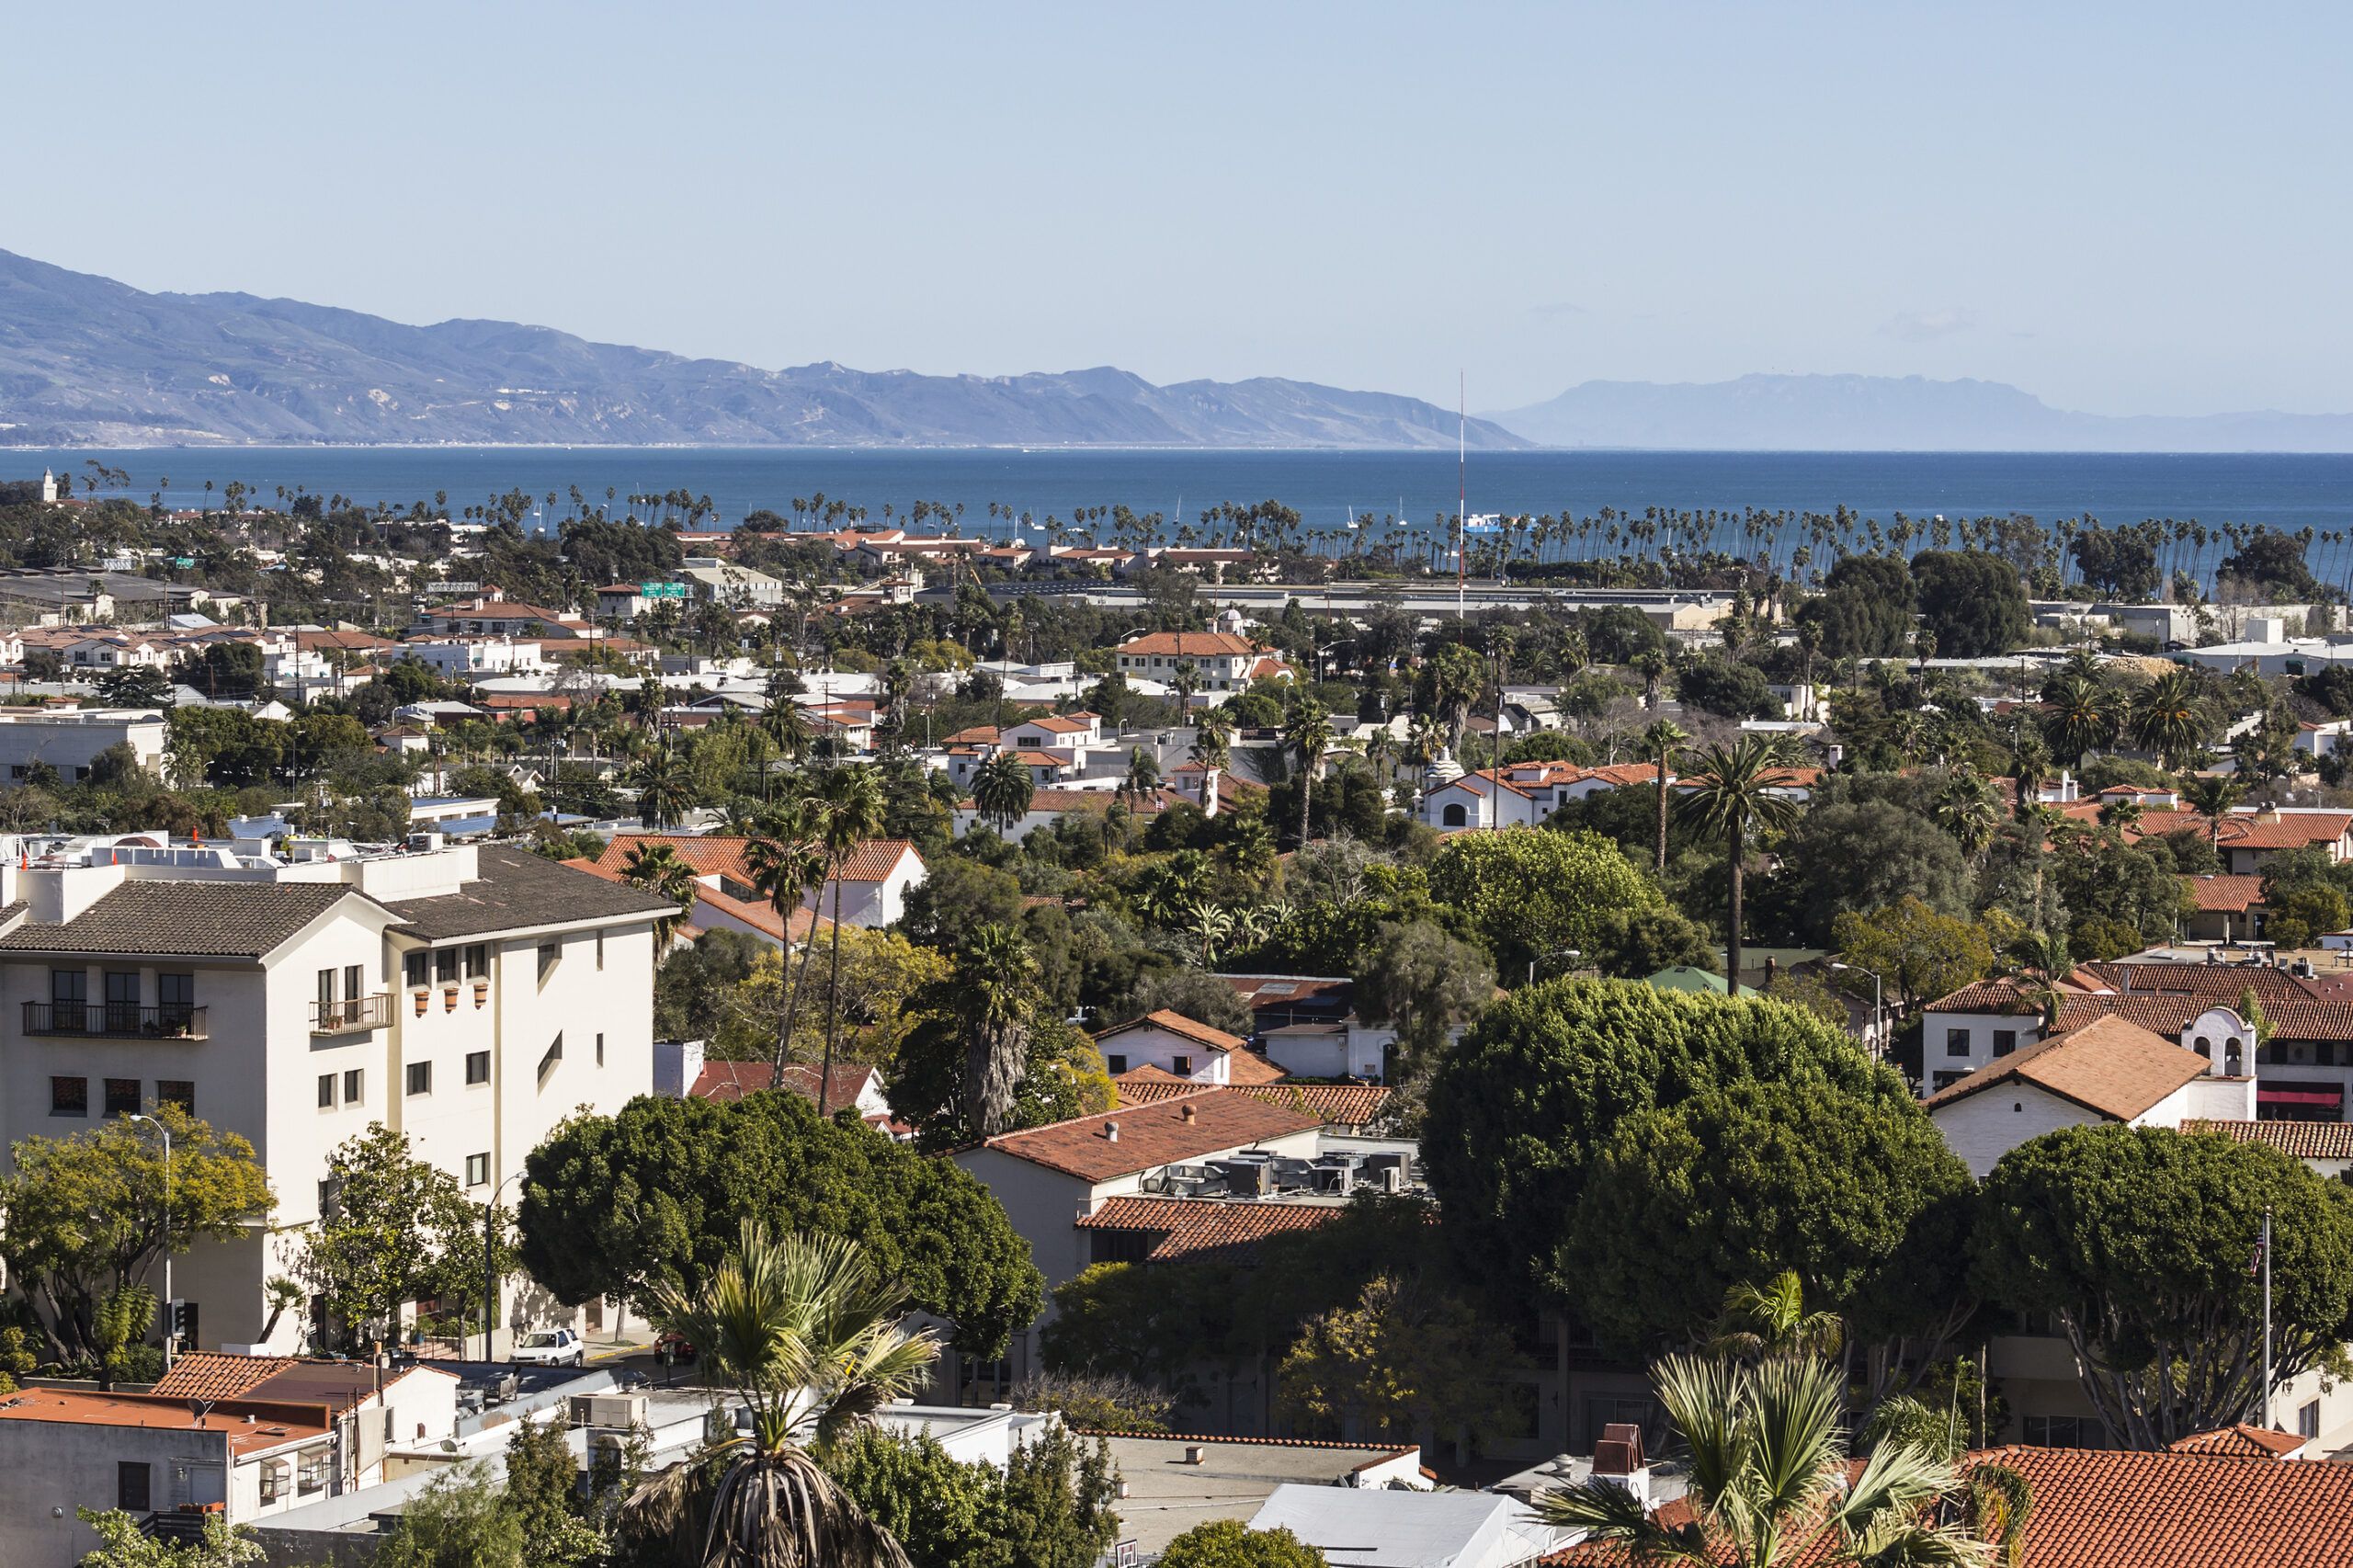 Clear afternoon view of Santa Barbara, California.